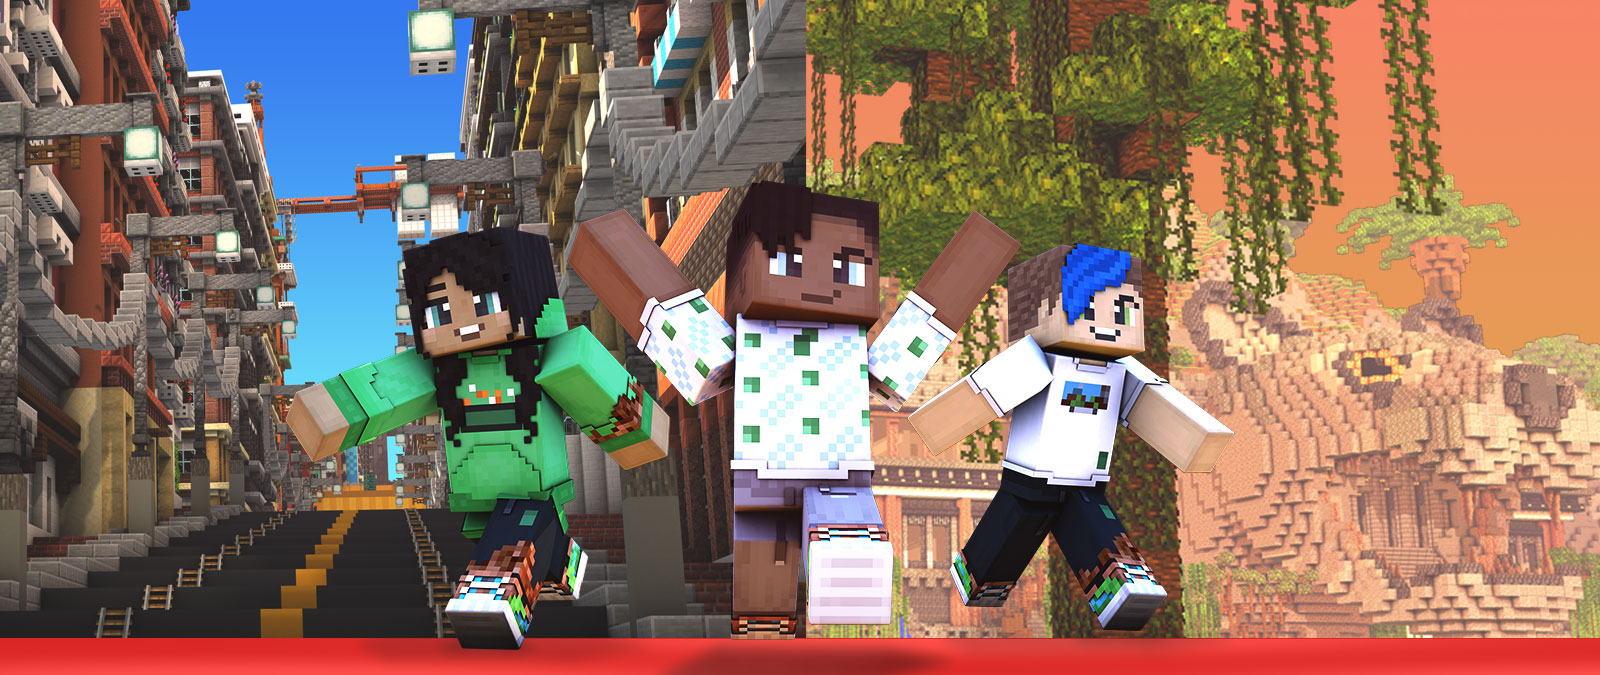 Tre personaggi di Minecraft davanti a una mappa a tema città e una a tema giungla